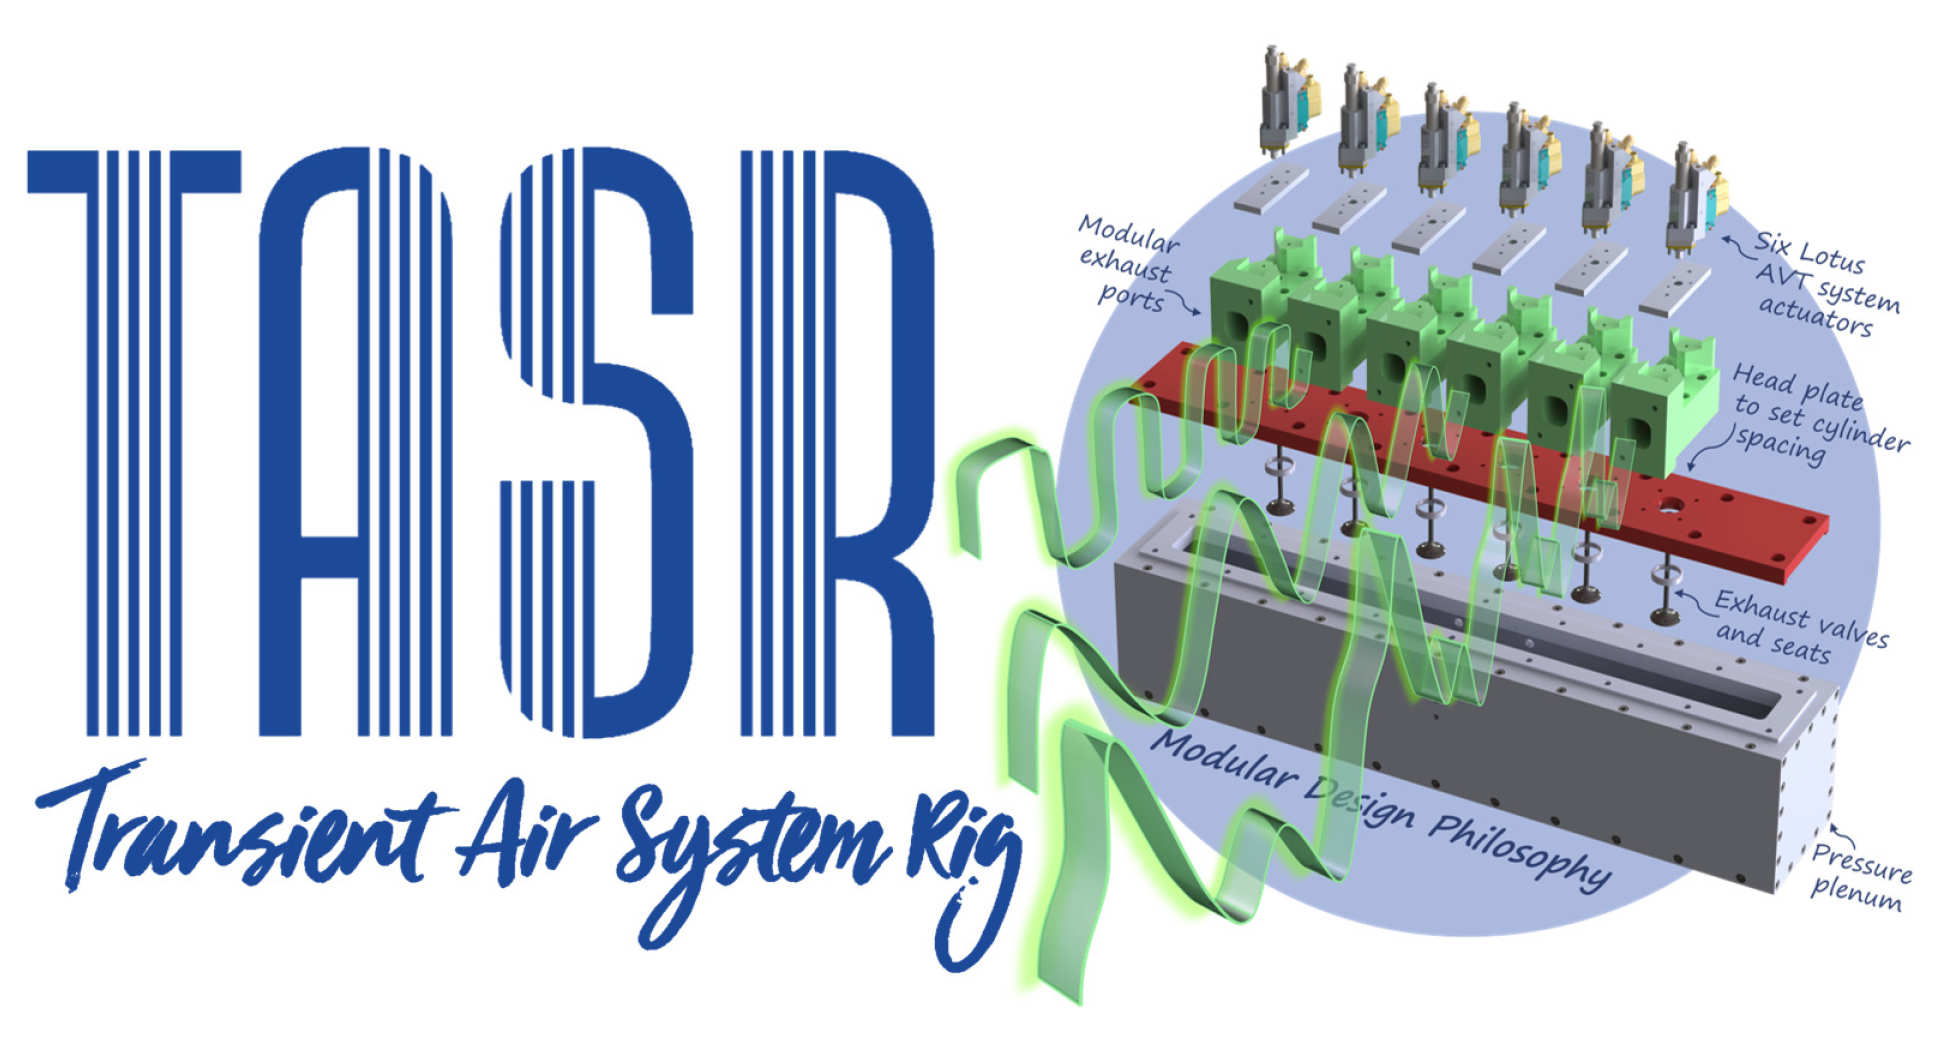 TASR: Transient Air System Rig